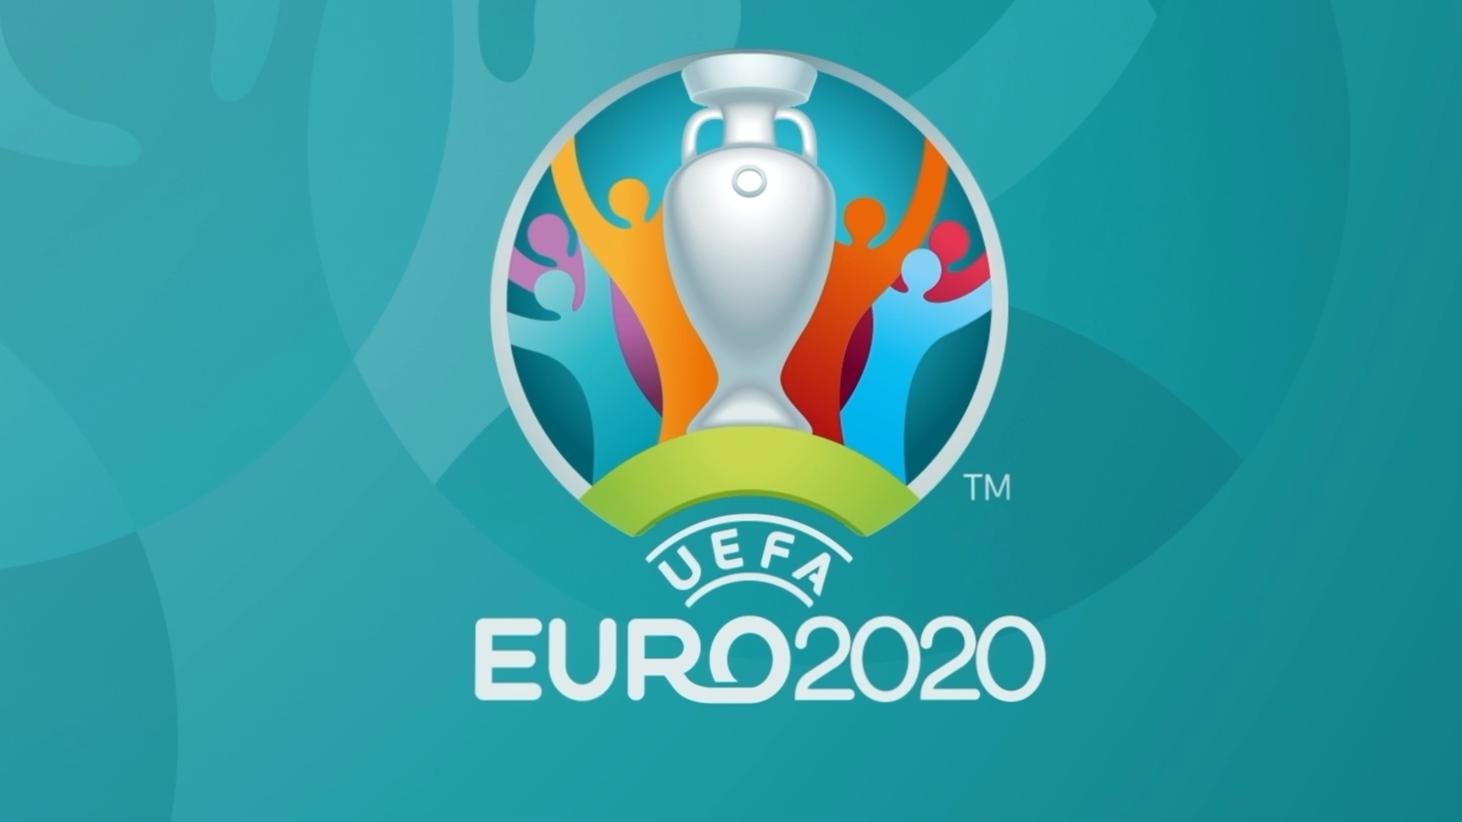 Sørge over Morgen ortodoks Samtlige fodbold-EM 2020 kampe streames på Viaplay - FlatpanelsDK